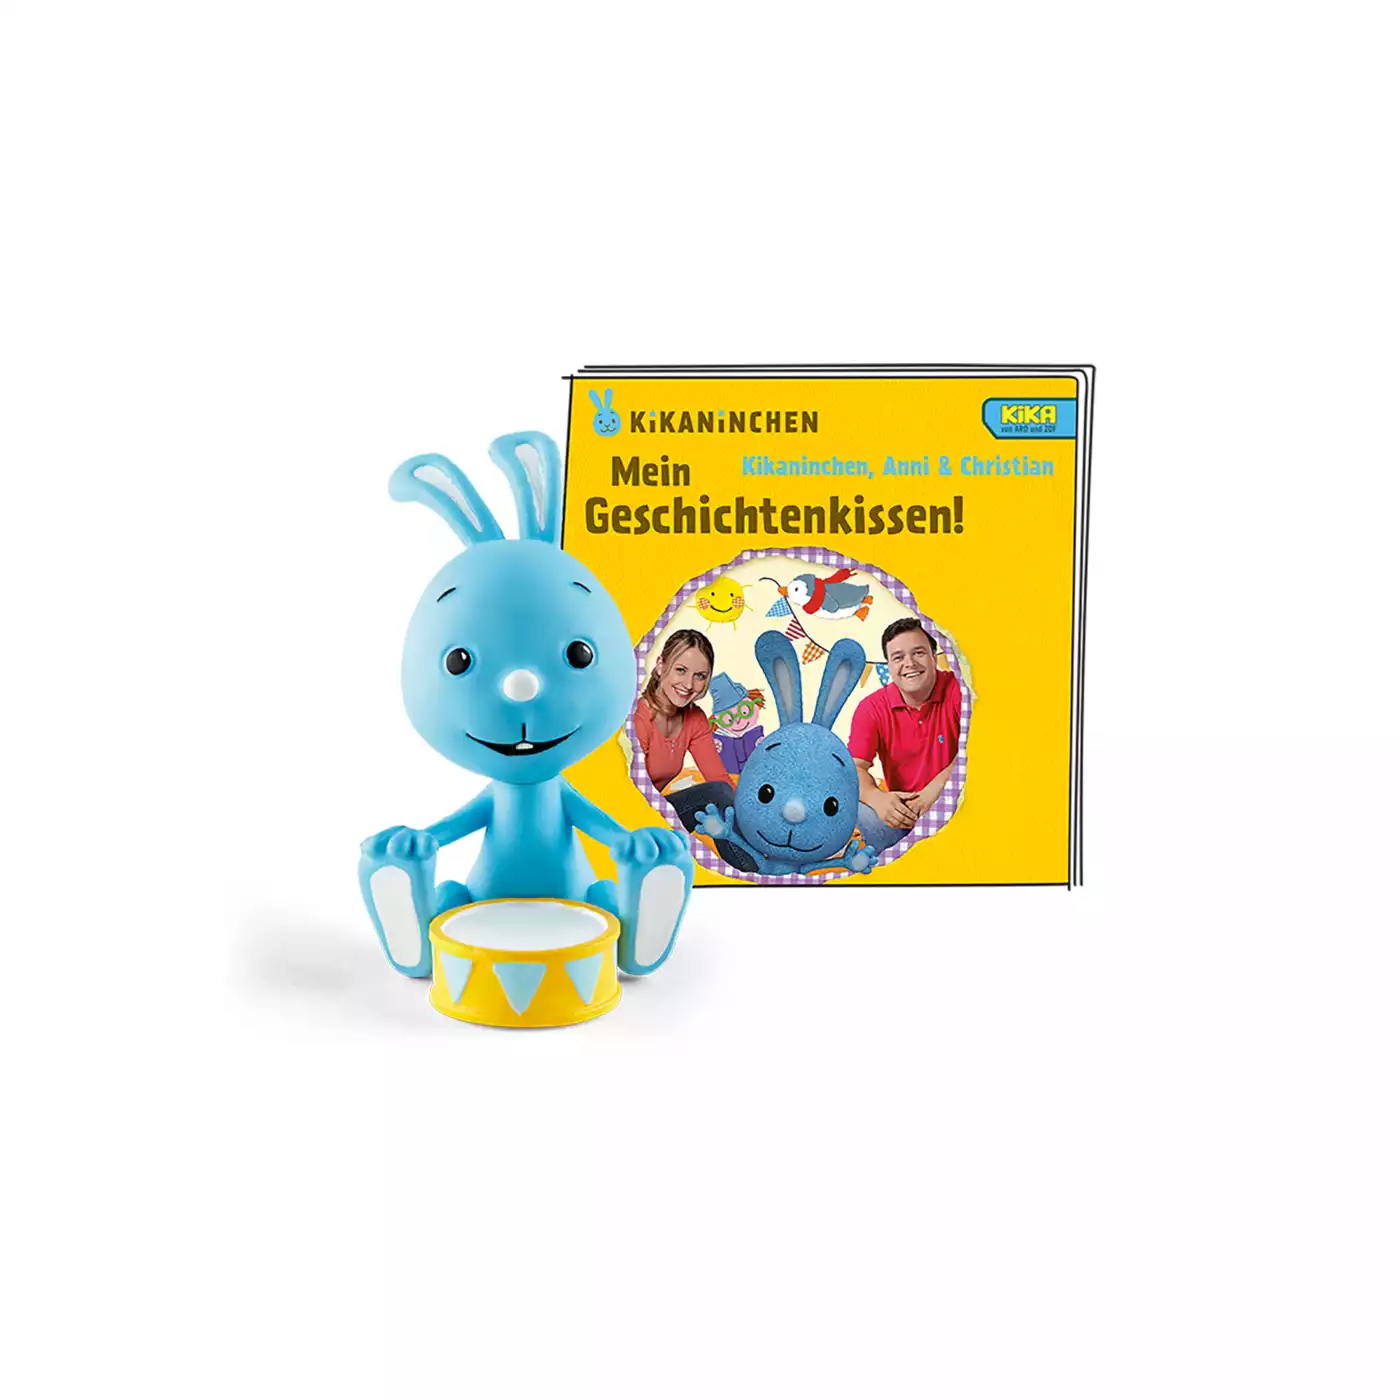 Kikaninchen - Mein Geschichtenkissen tonies 2000572898607 1